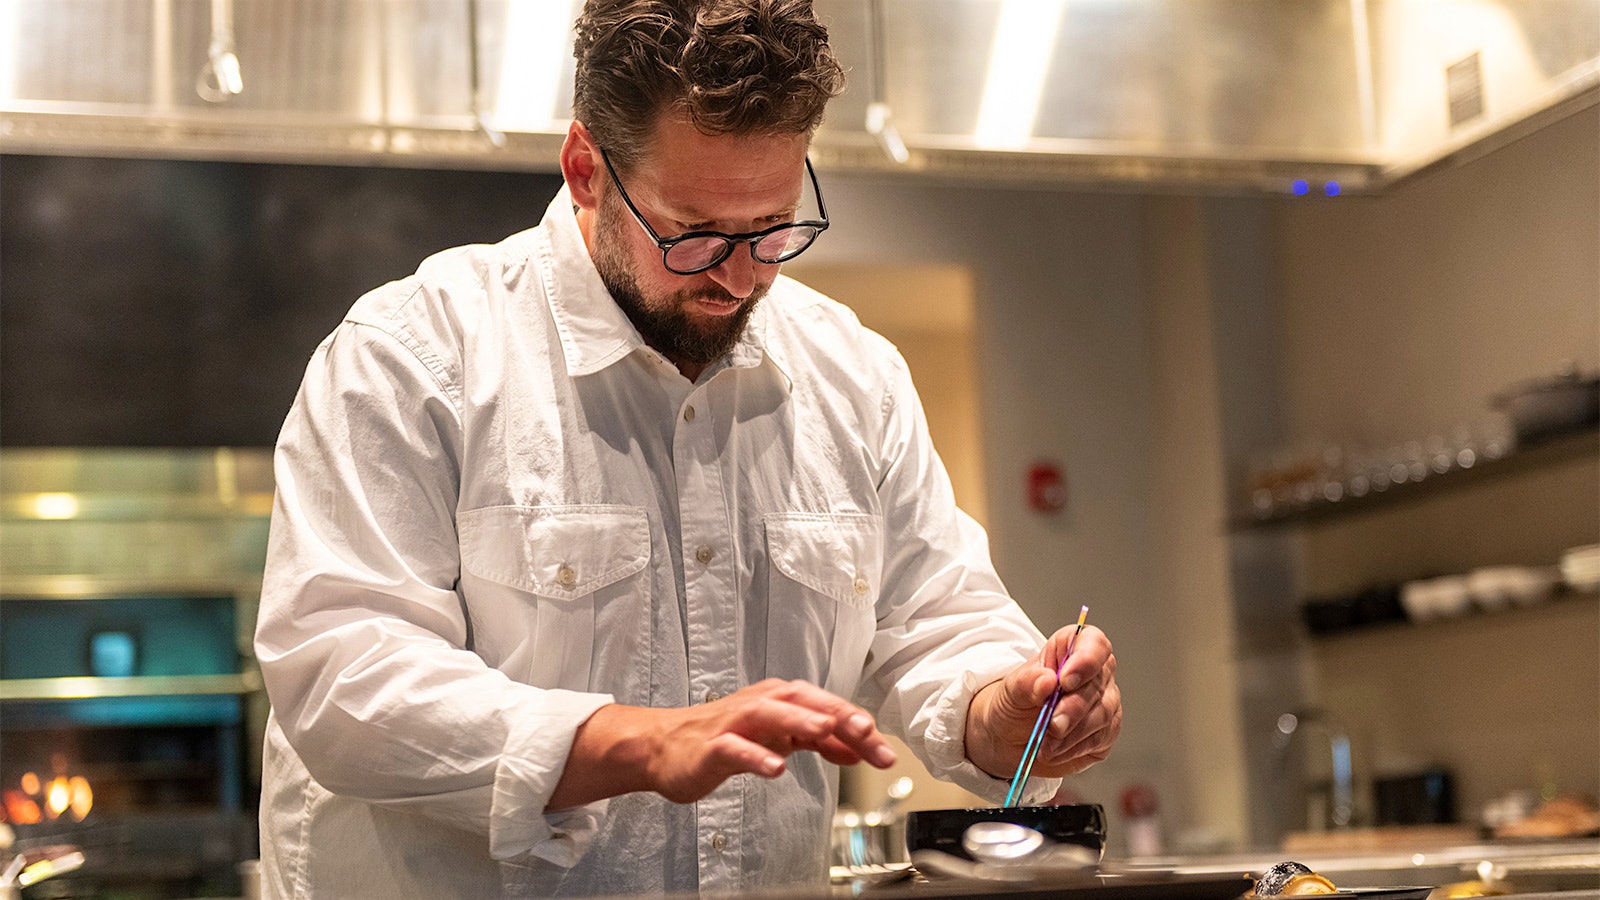  Chef Matthew Lightner, in a white shirt, prepare a dish in О̄kta's kitchen.